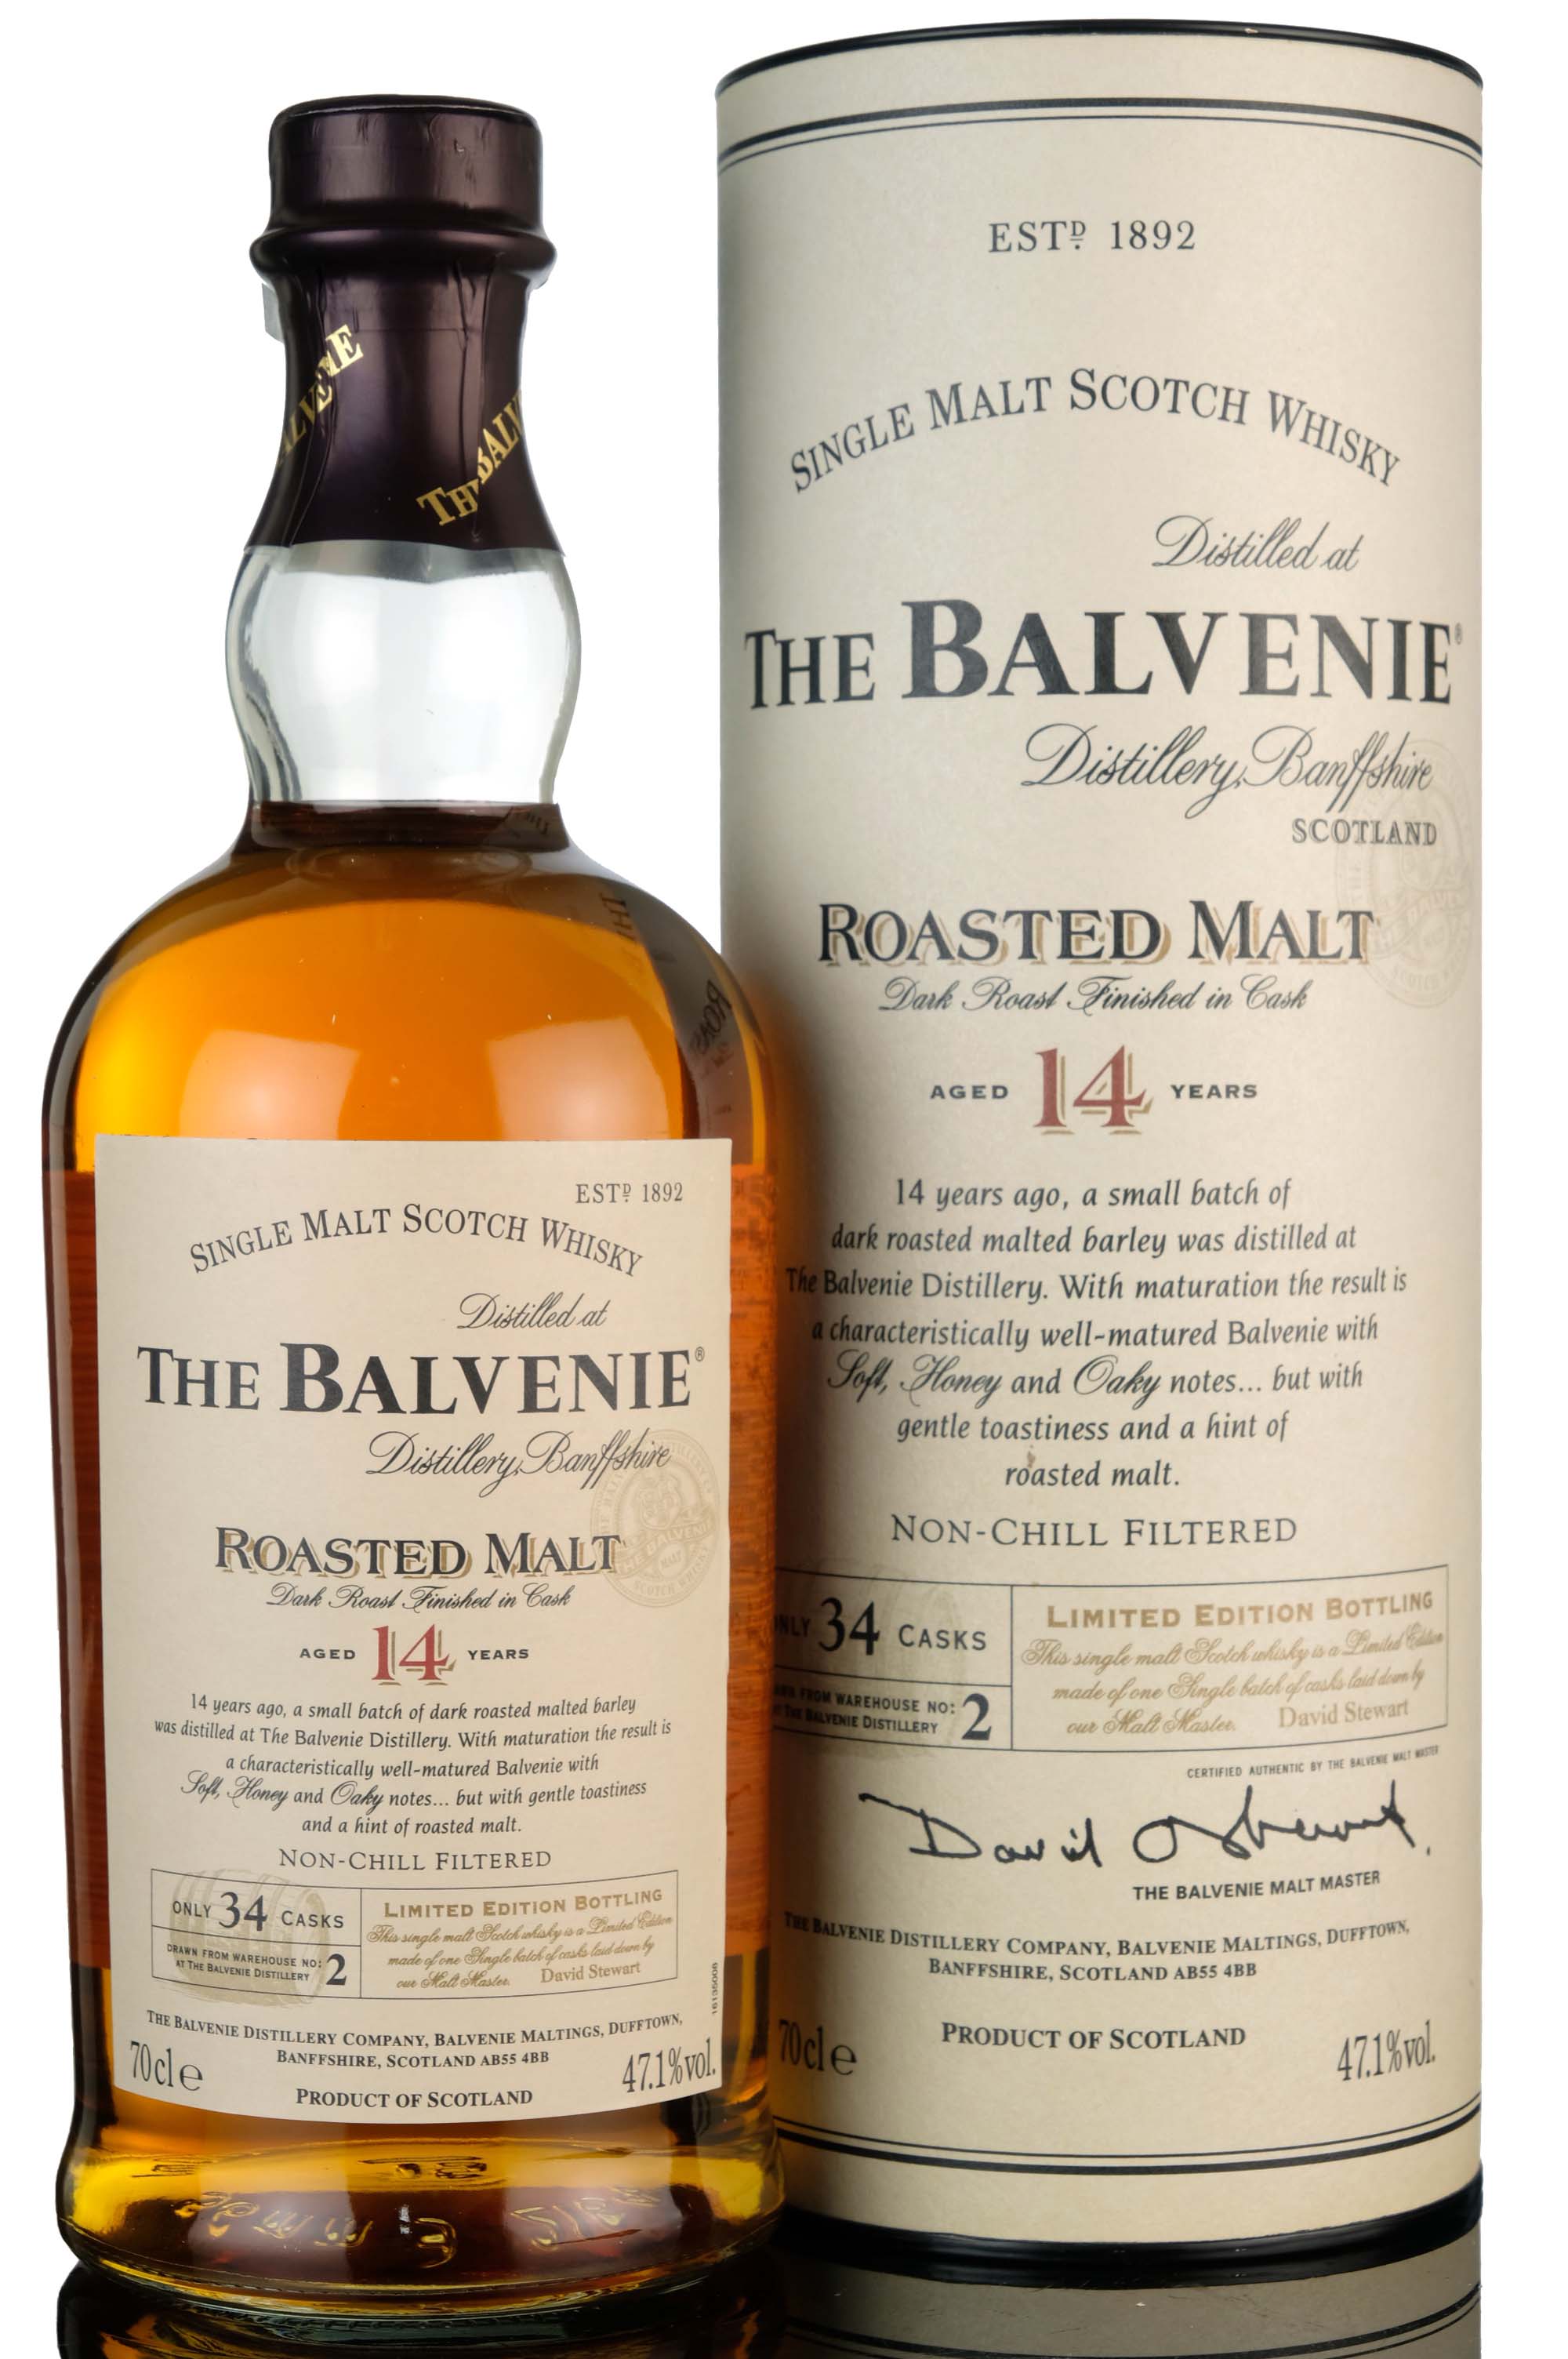 Balvenie 14 Year Old - Roasted Malt - 2006 Release